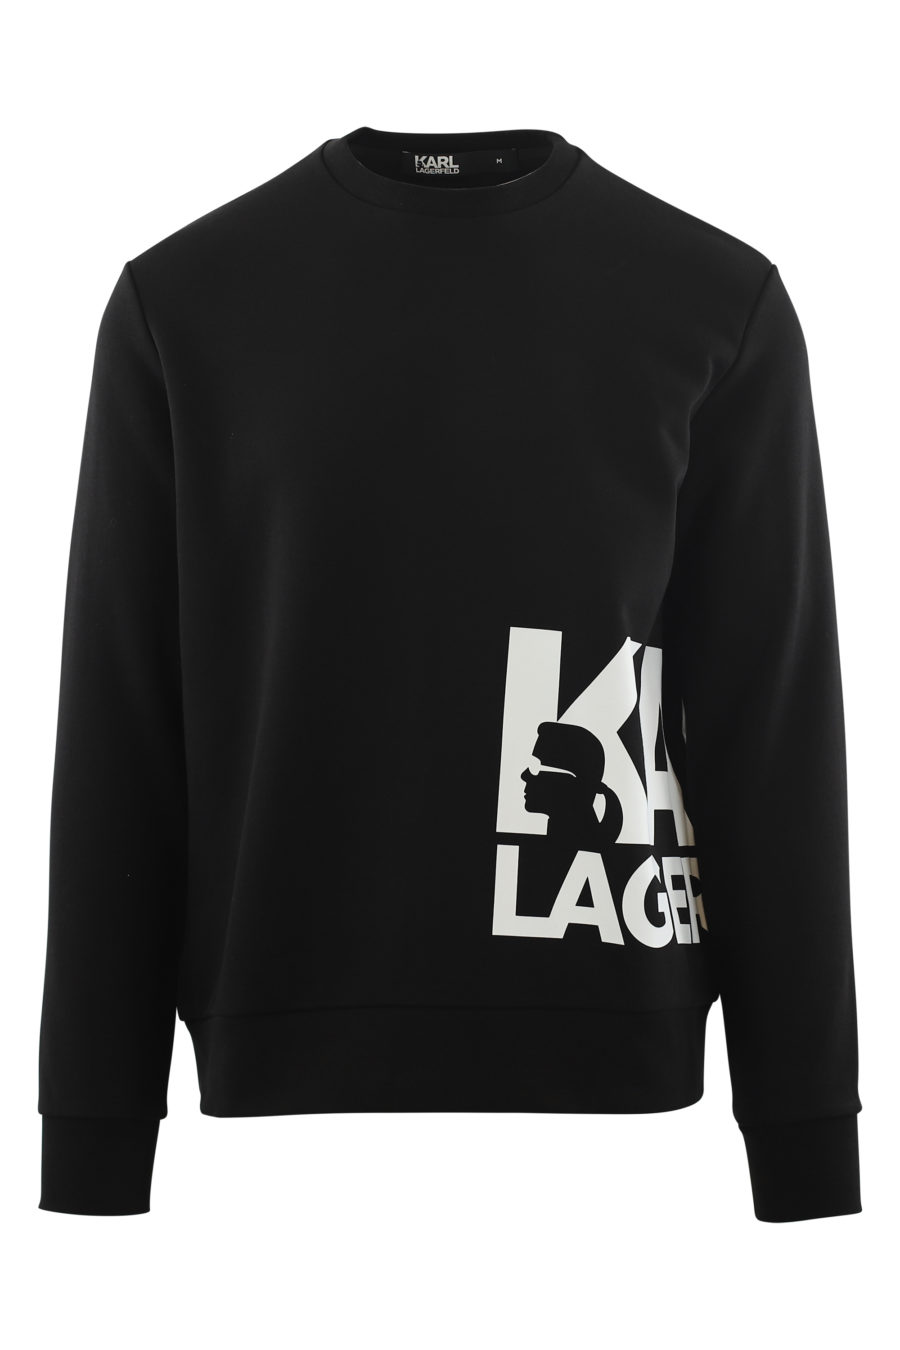 Black sweatshirt with large white side logo - IMG 6563